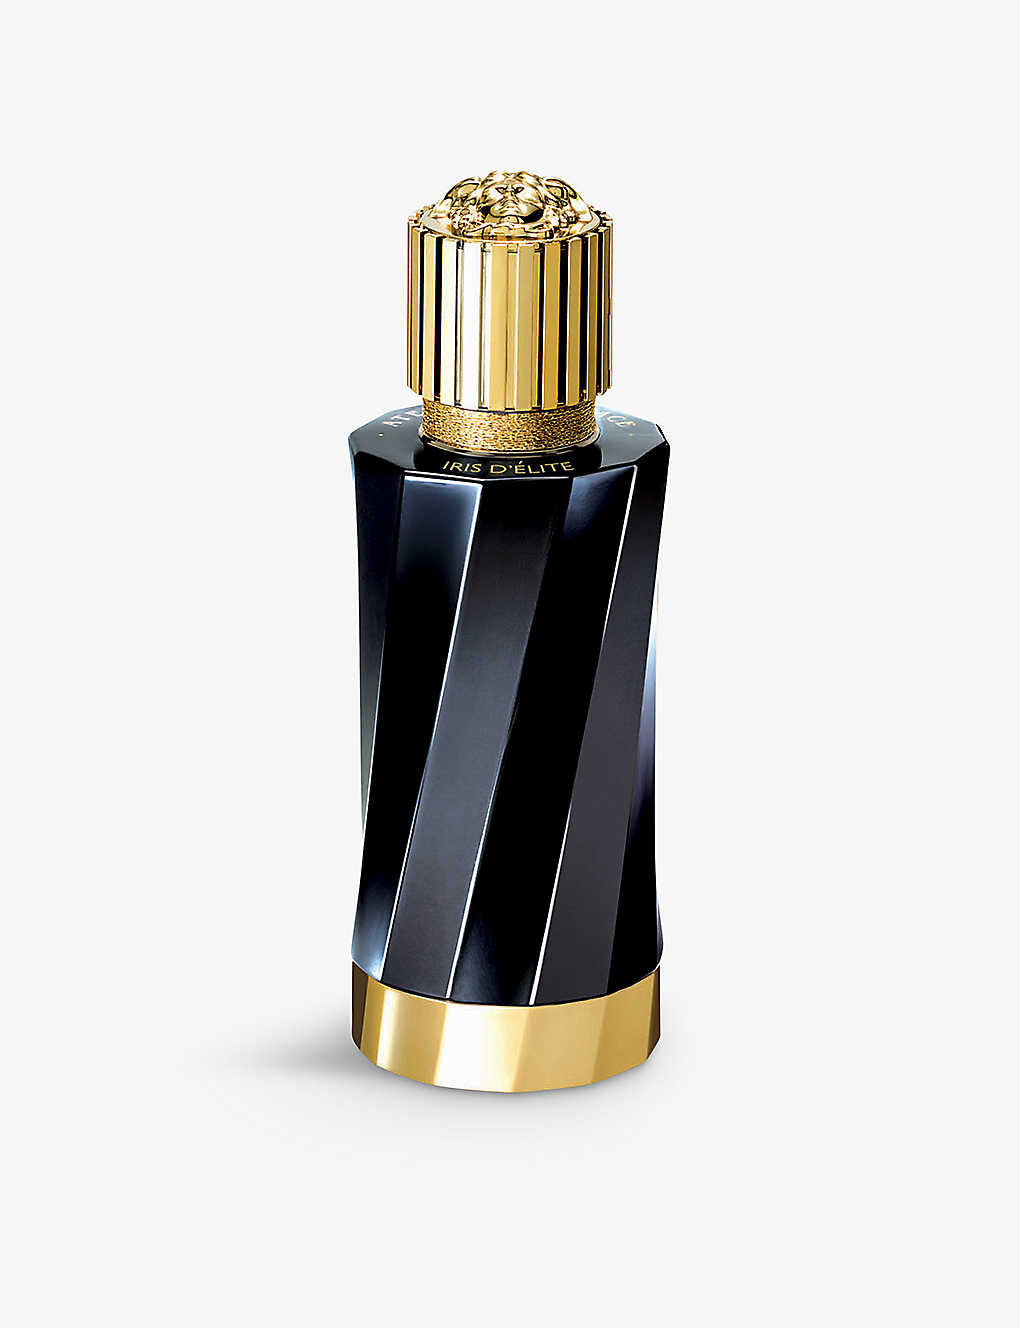 Versace Iris D'élite Eau De Parfum